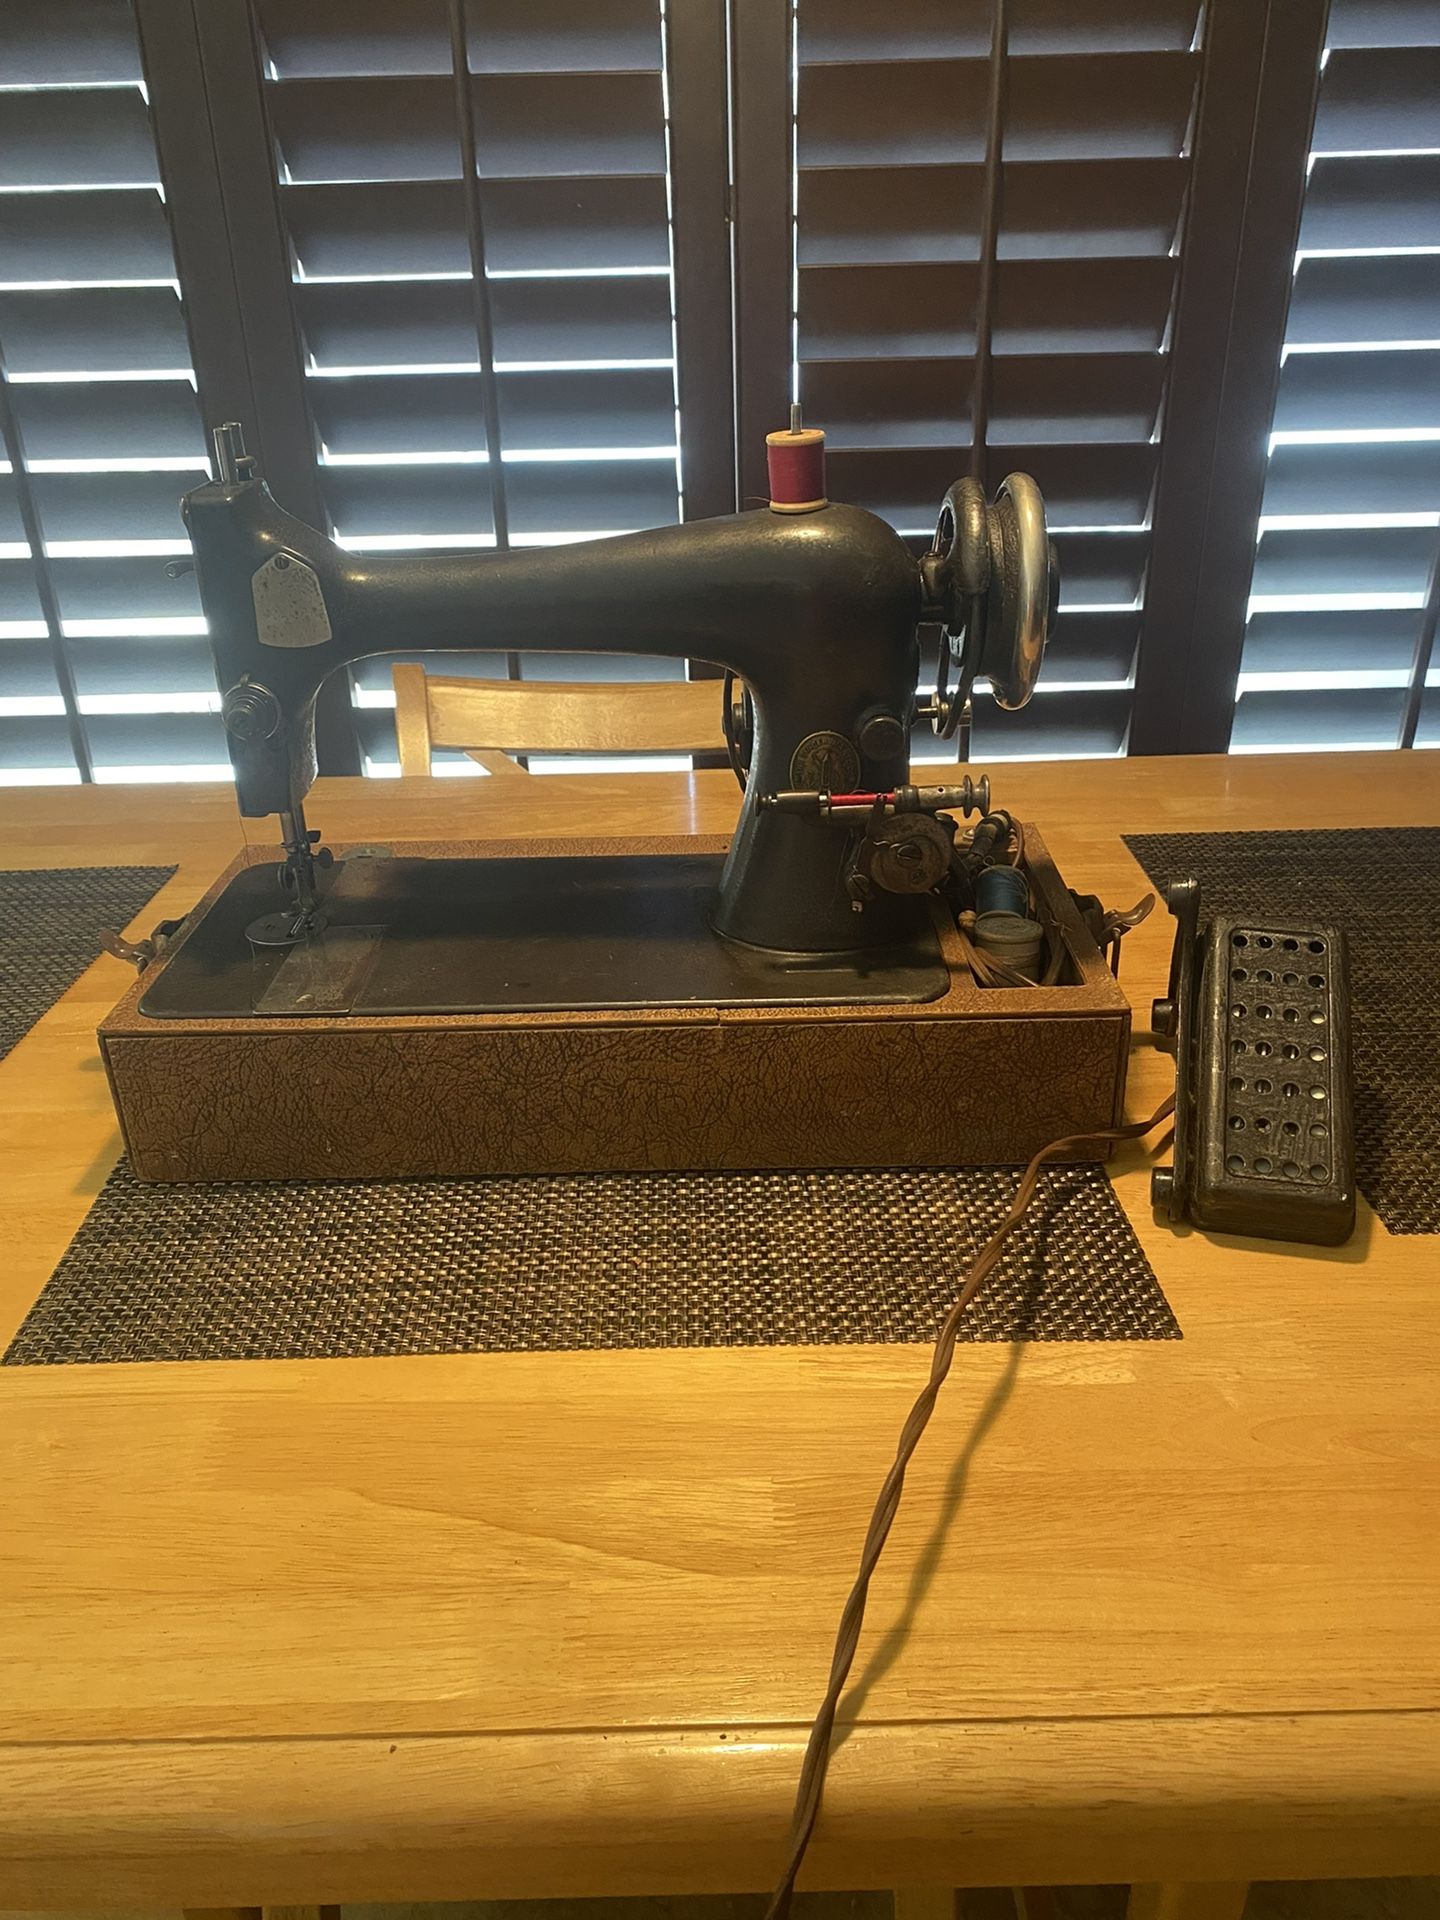 Singer Manfcoo Sewing Machine